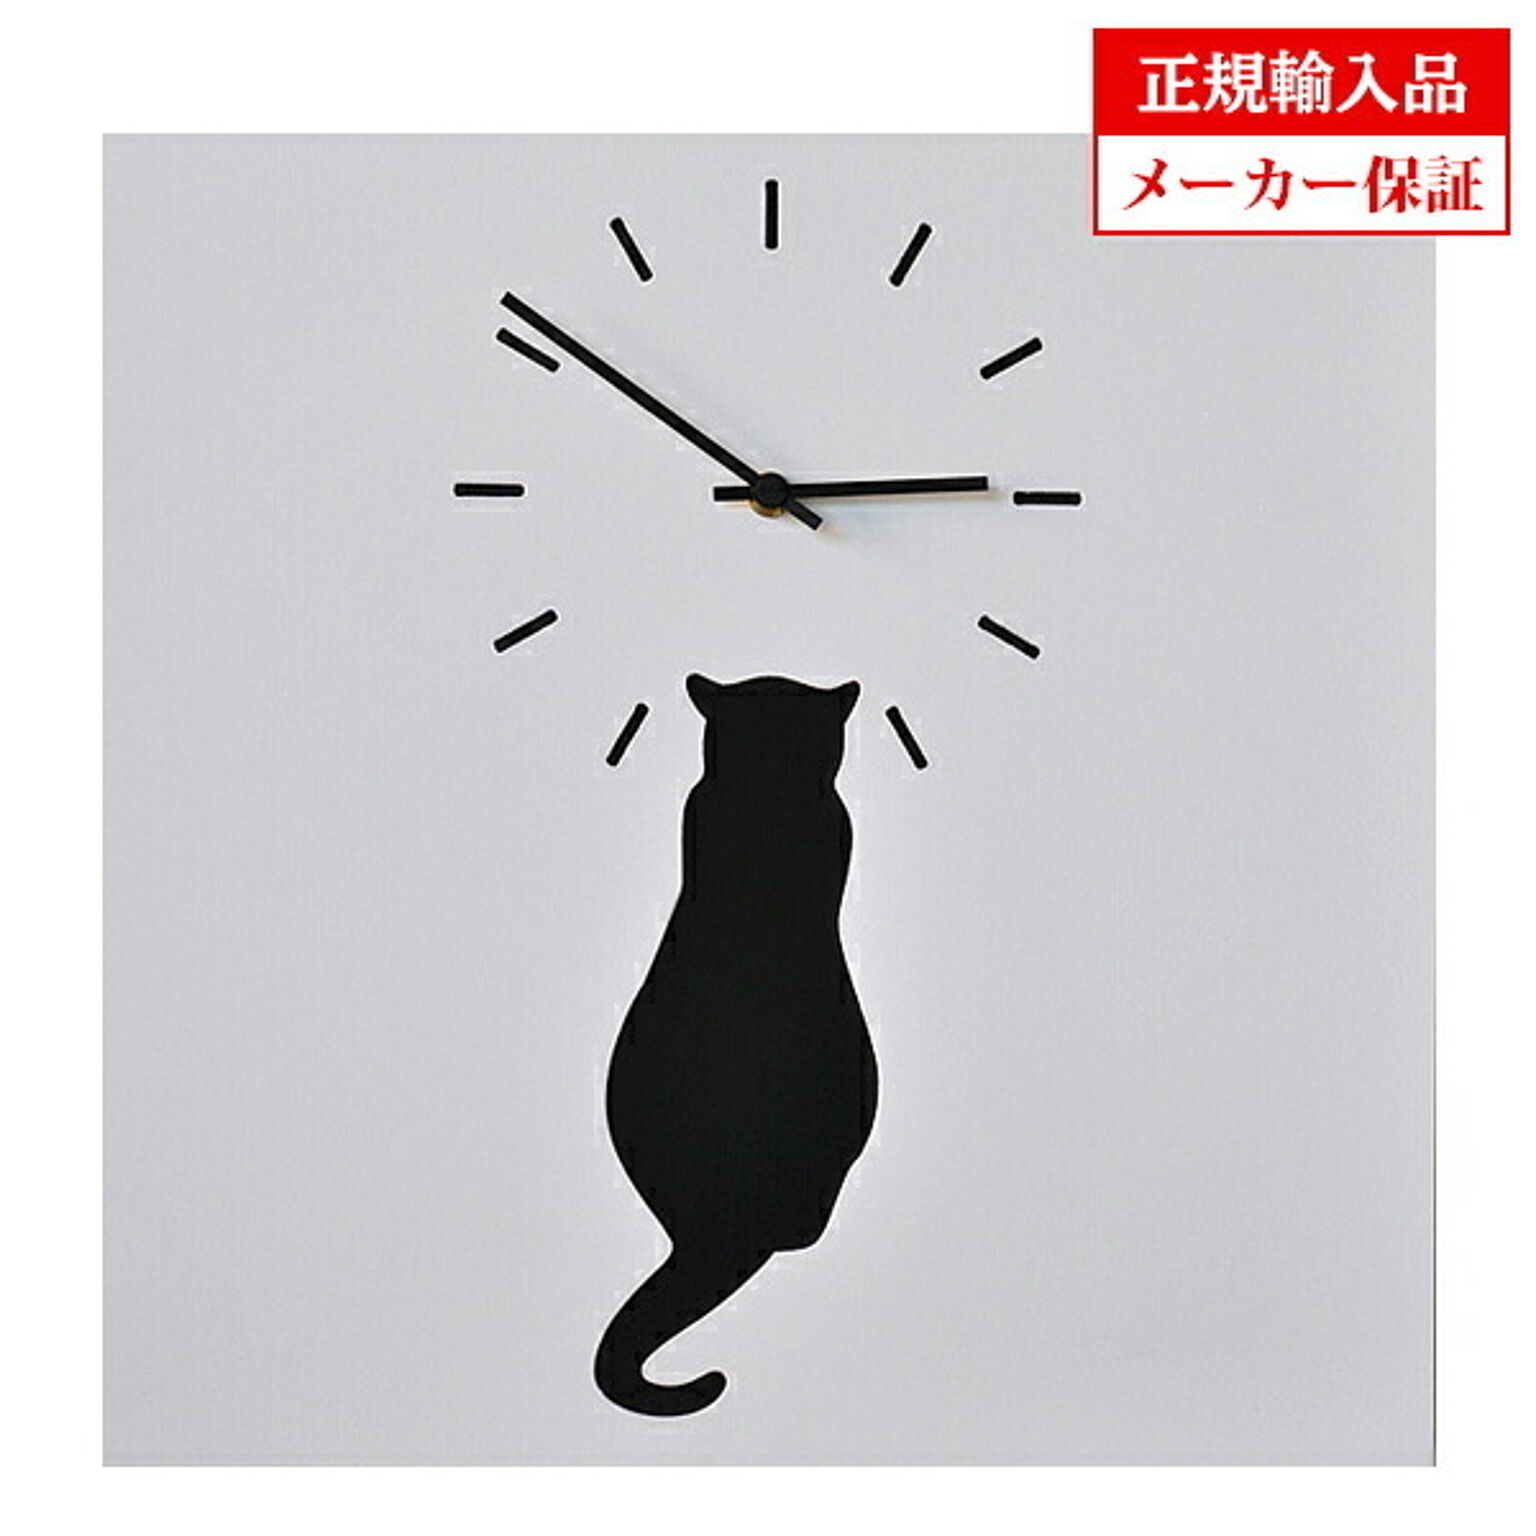 【正規輸入品】イタリア ピロンディーニ Pirondini ART044 木製 クオーツ 掛け時計 Cat white blackcat 044